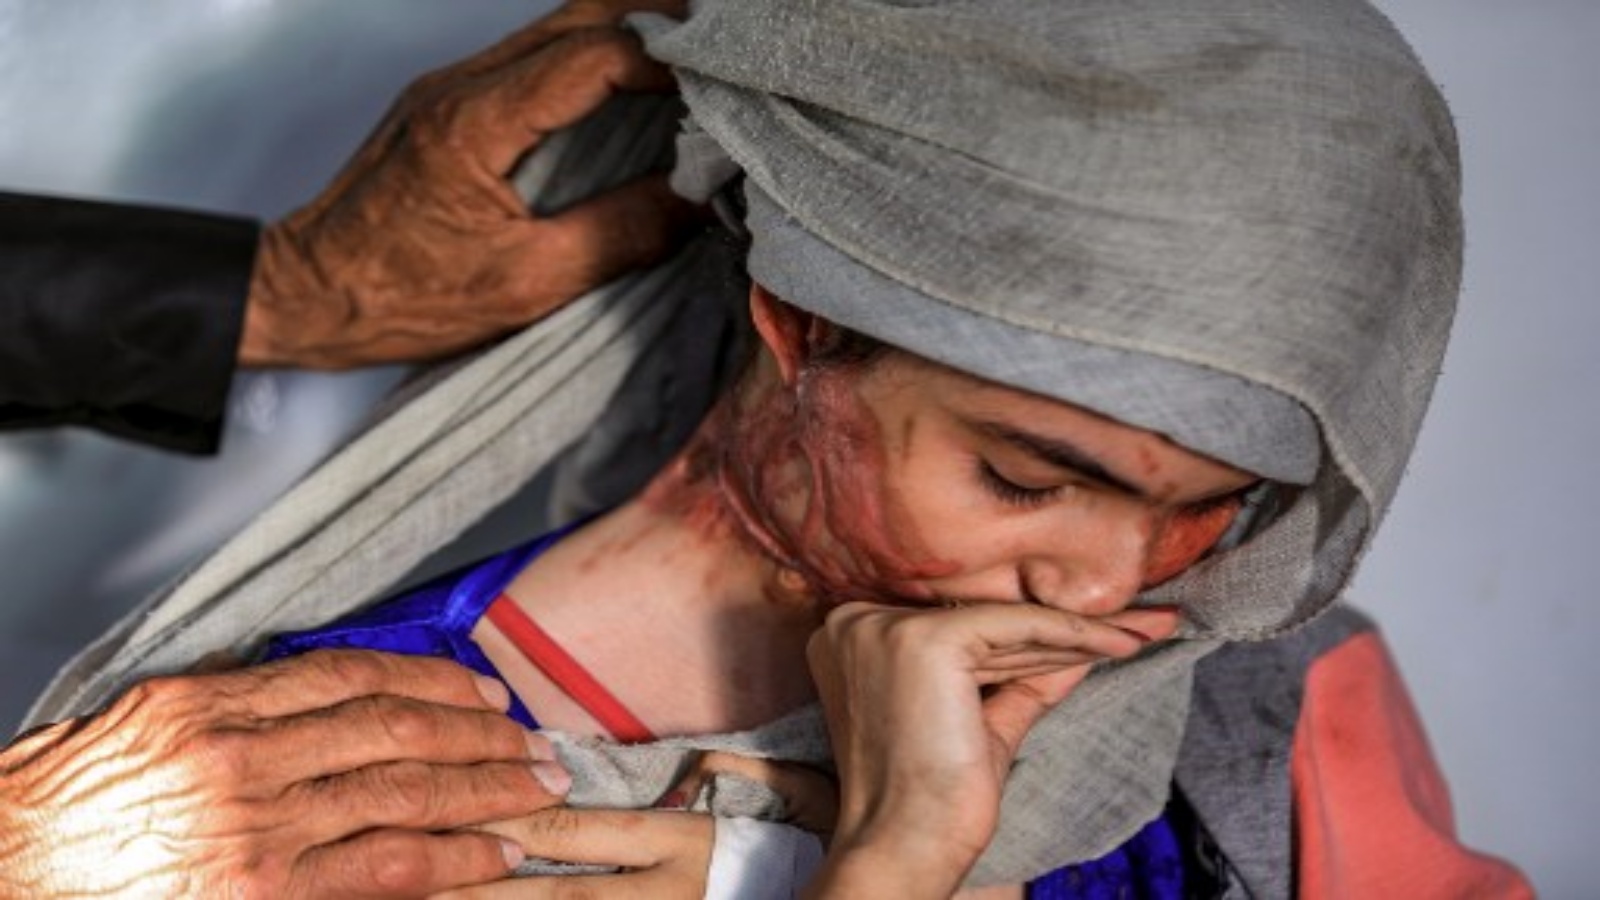 العنود حسين شريان ، فتاة تبلغ من العمر 19 عامًا تعرضت للتشوه في هجوم بالحامض من قبل زوجها الذي أساء معاملتها ، تجلس في مستشفى حيث تخضع للعلاج في العاصمة اليمنية صنعاء في 28 يناير 2021 حيث تخلع حجابها لتظهر إصاباتها